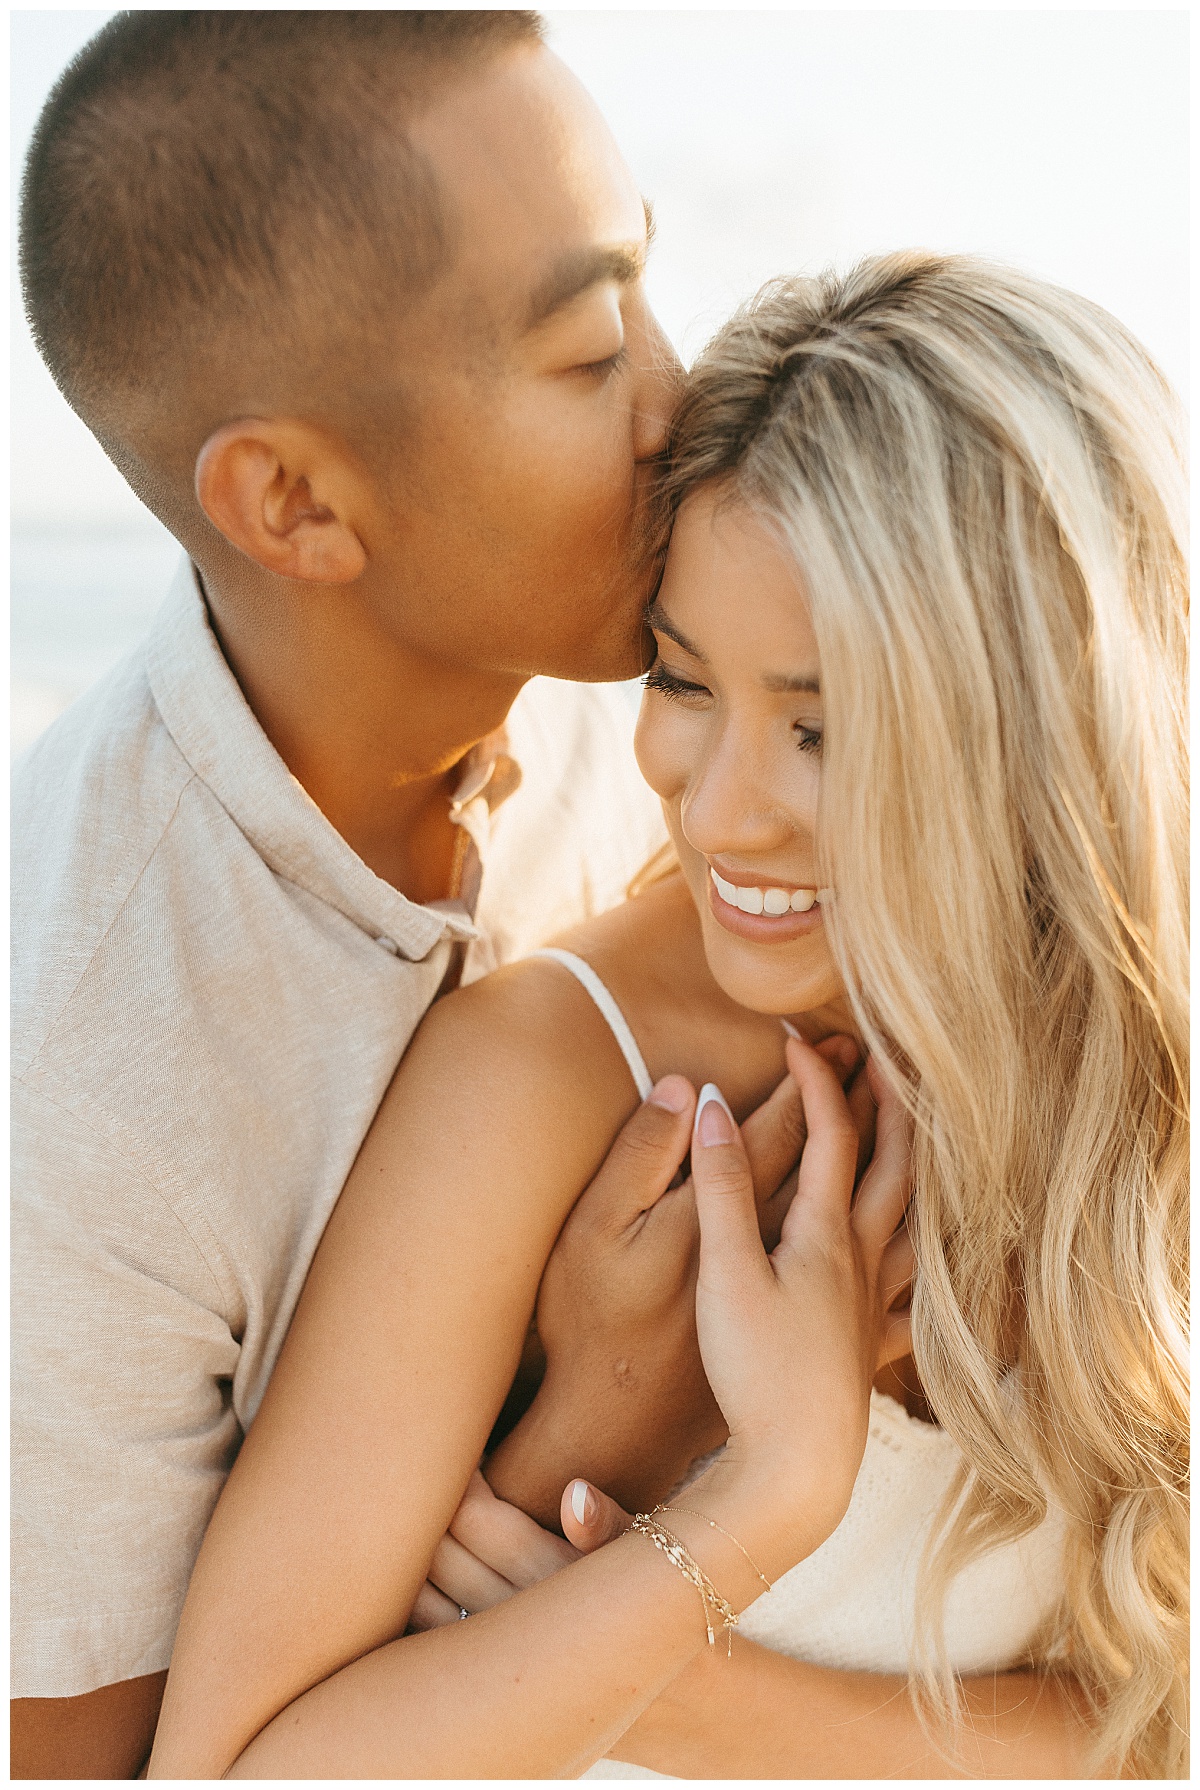 guy kisses girl on head by Virginia Beach photographer